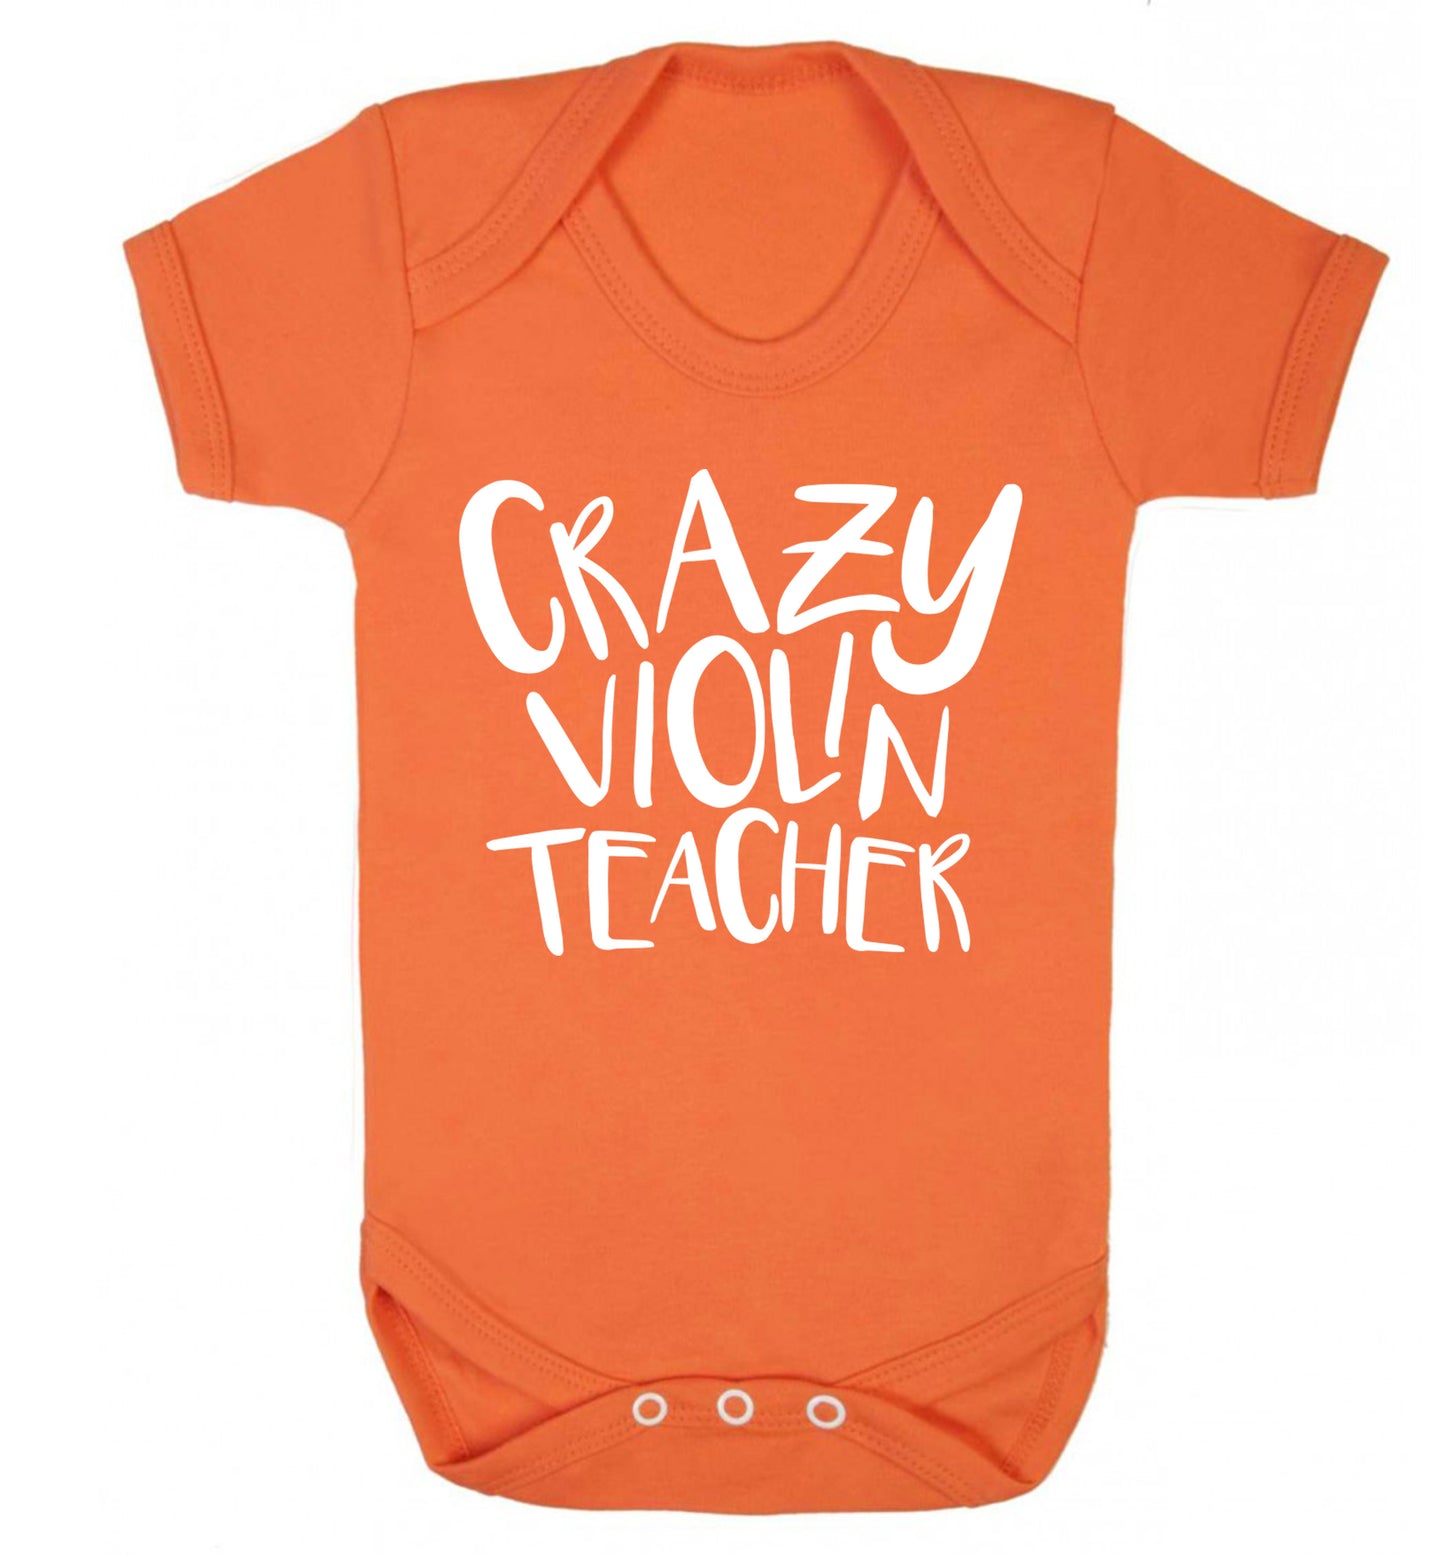 Crazy violin teacher Baby Vest orange 18-24 months